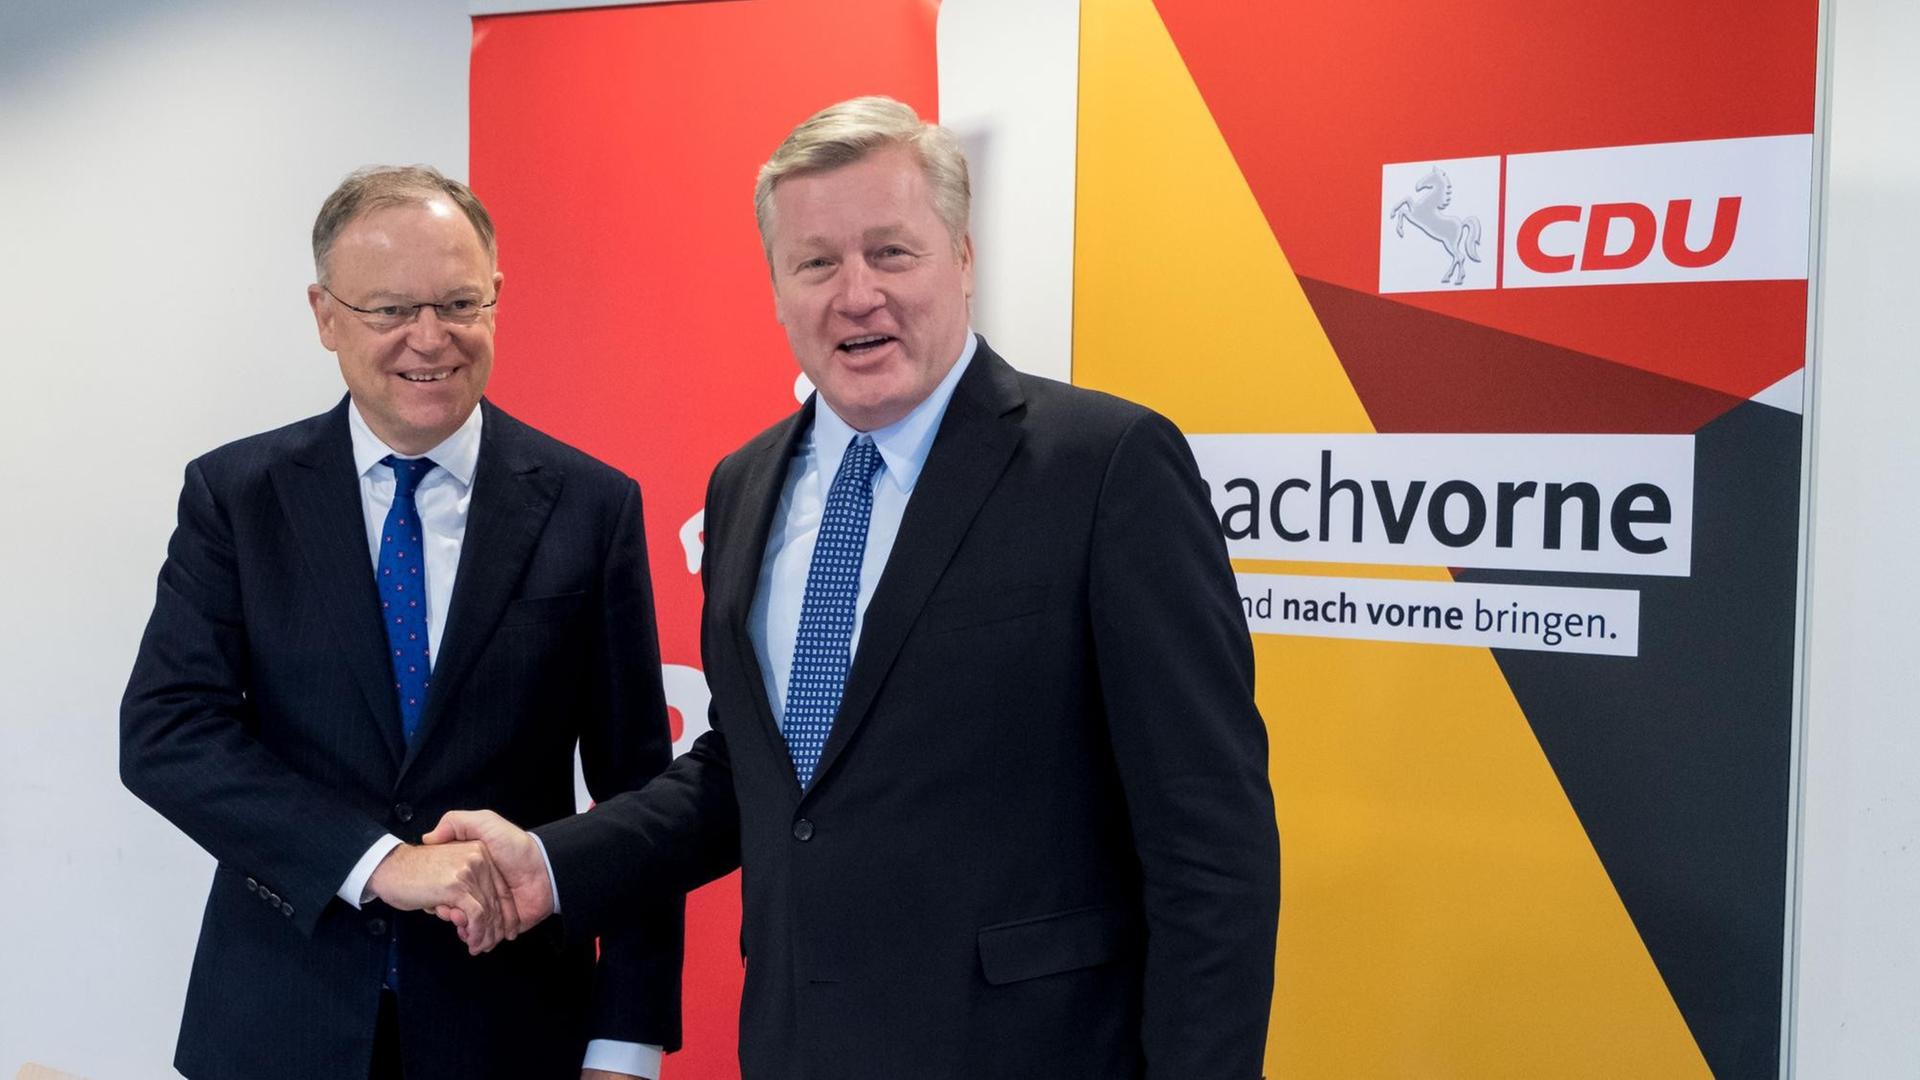 Der Ministerpräsident von Niedersachsen, Stephan Weil und der CDU-Landesvorsitzende, Bernd Althusmann geben sich die Hand am 16.11.2017 nach den Koalitionverhandlungen in Hannover.